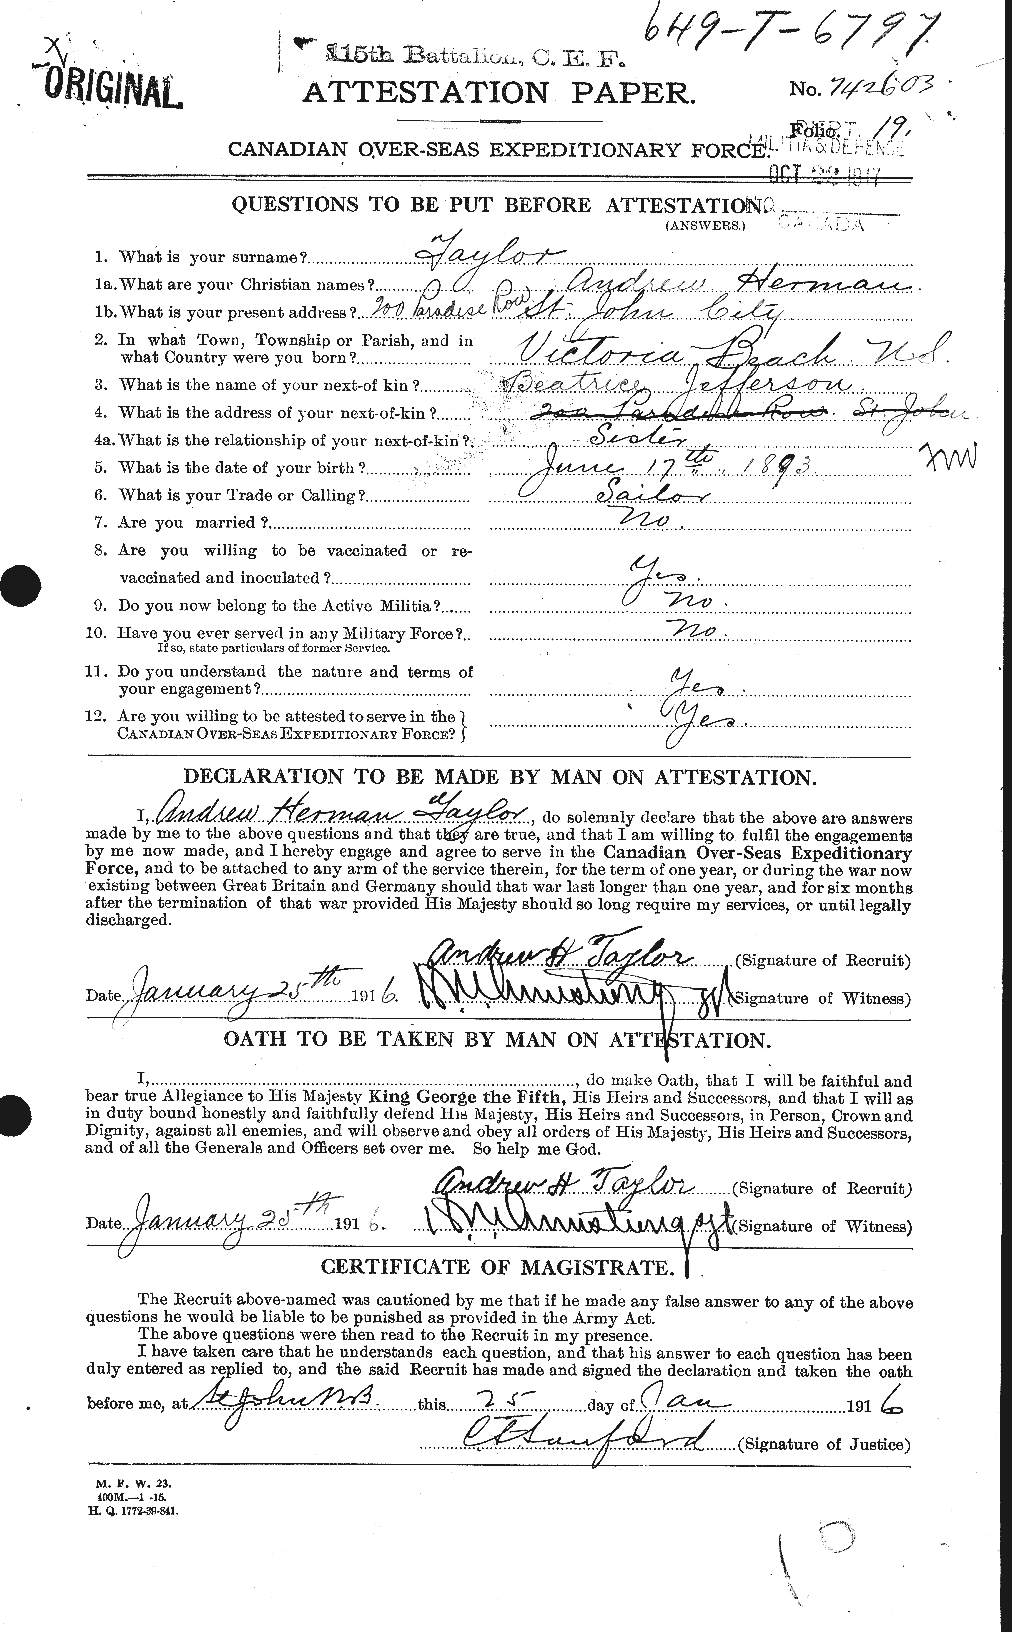 Dossiers du Personnel de la Première Guerre mondiale - CEC 626230a